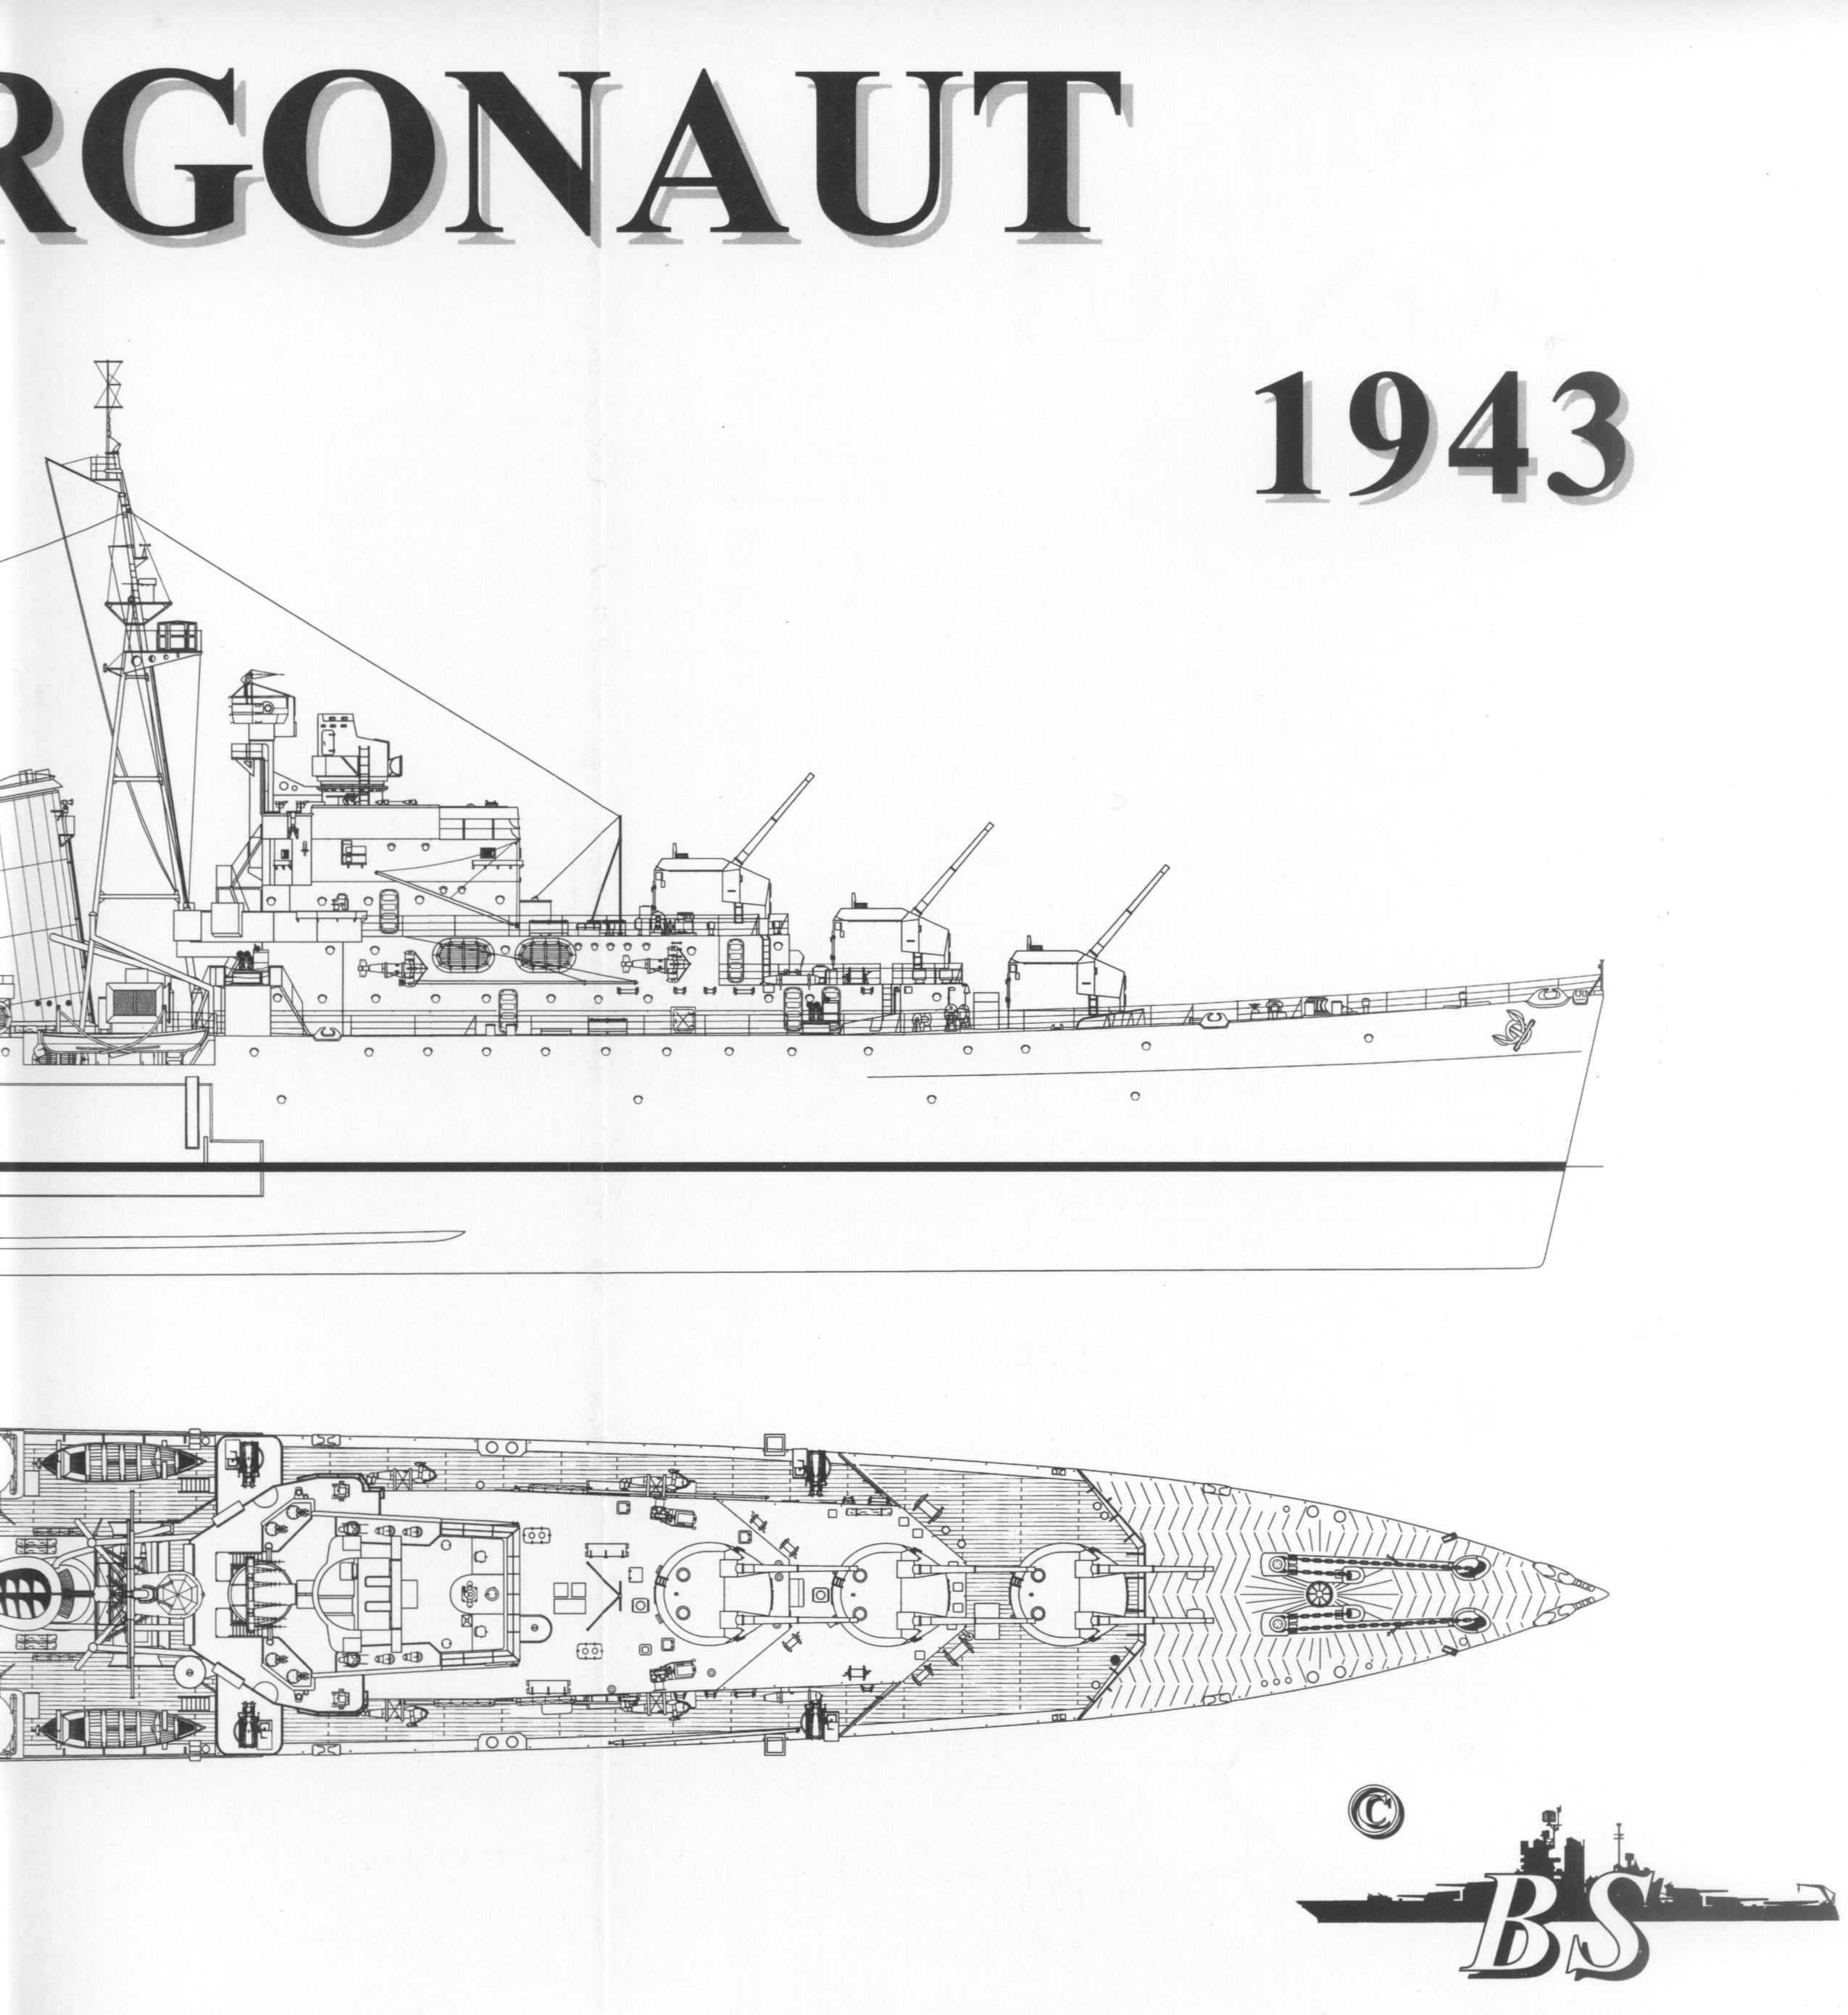 Argonaut drawing 01c.jpg